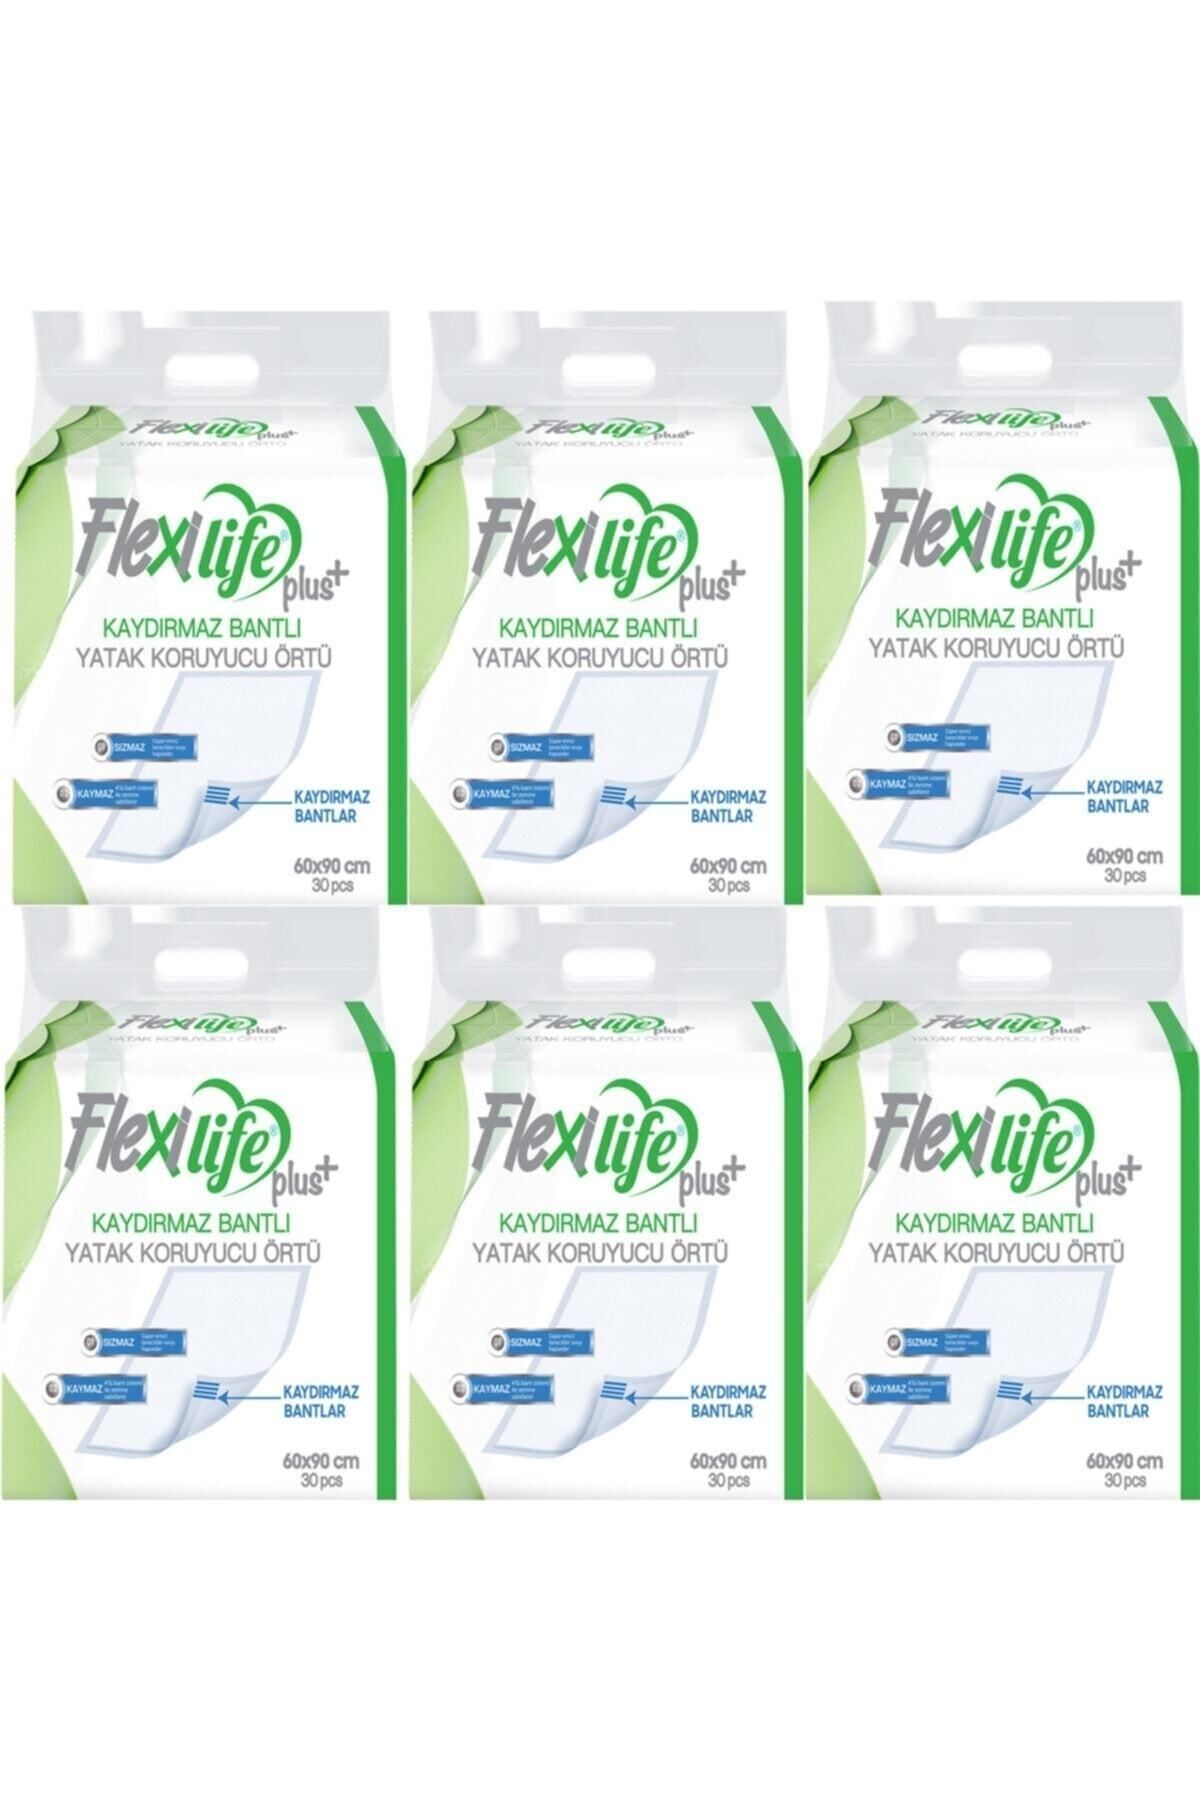 Flexi Life Flexilife Hasta Altı Bezi Kaydırmaz Bantlı Yatak Koruyucu Örtü 60x90 Cm 30 Lu 6 Paket